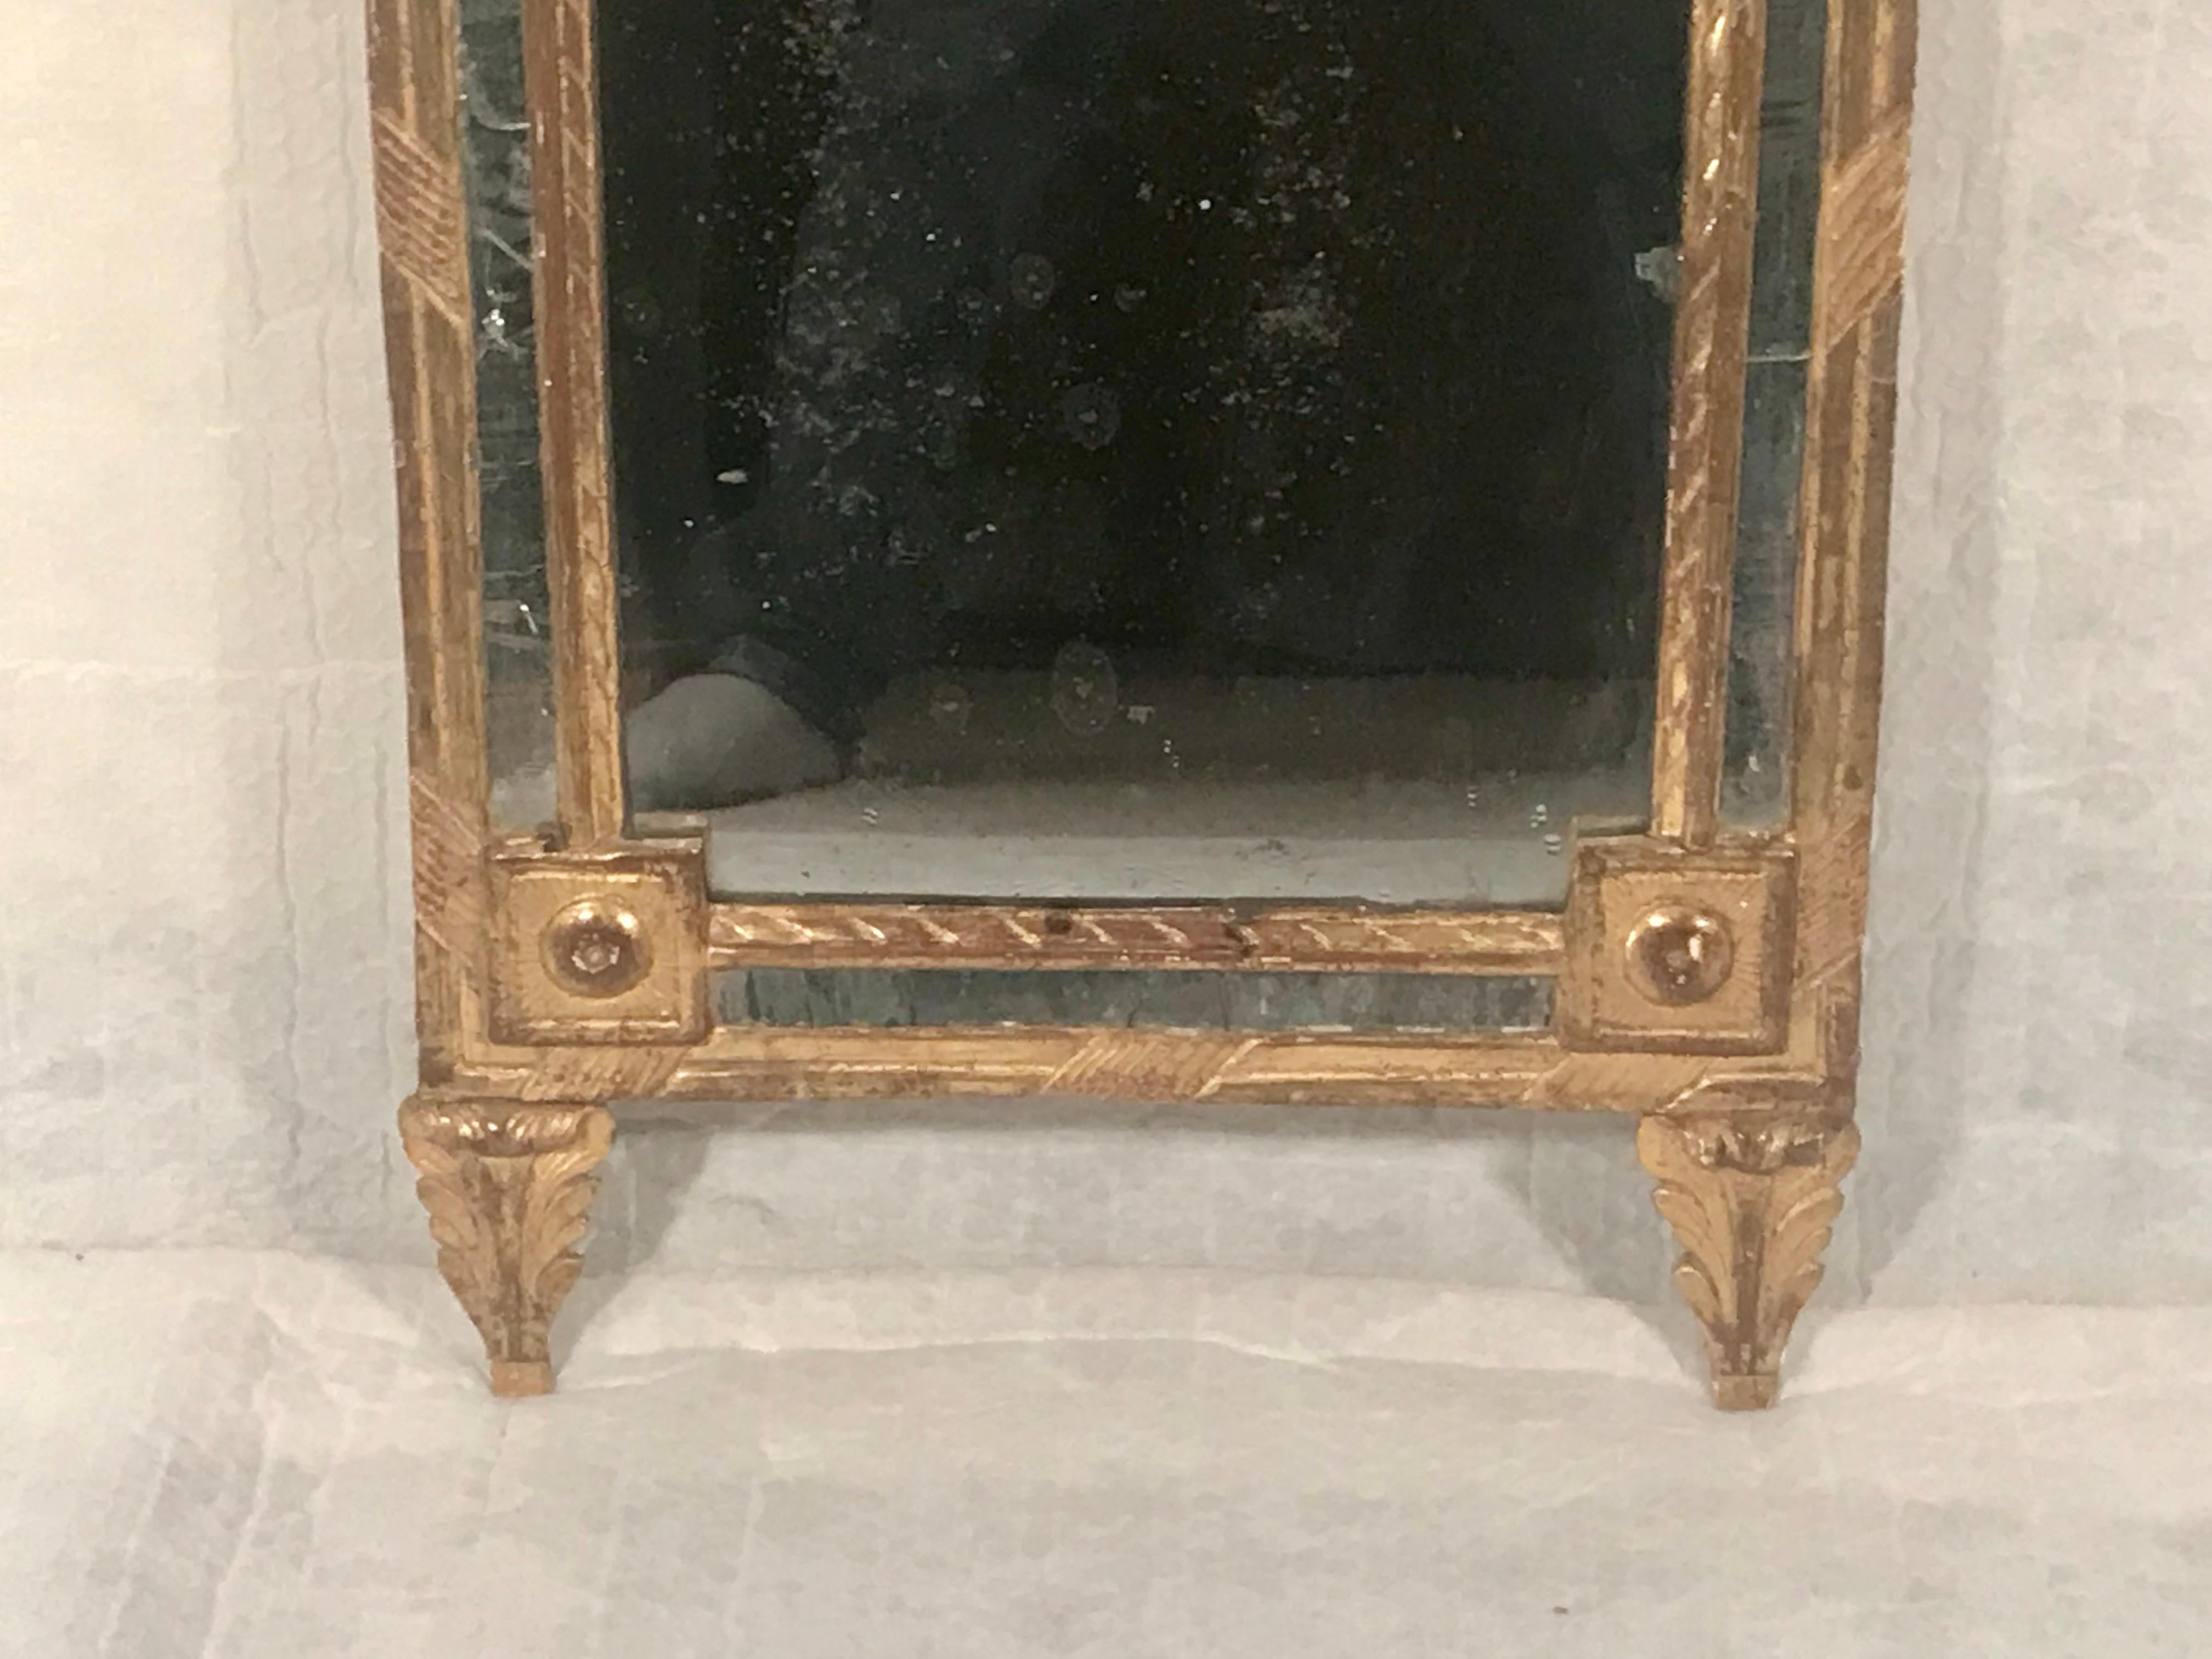 Entrez dans le monde opulent de la France du XVIIIe siècle avec ce miroir Louis XVI. Fabriqué dans les années 1780, ce miroir illustre le summum de l'artisanat et du design français.

Sculpté à la main dans du bois doré, chaque détail de ce miroir